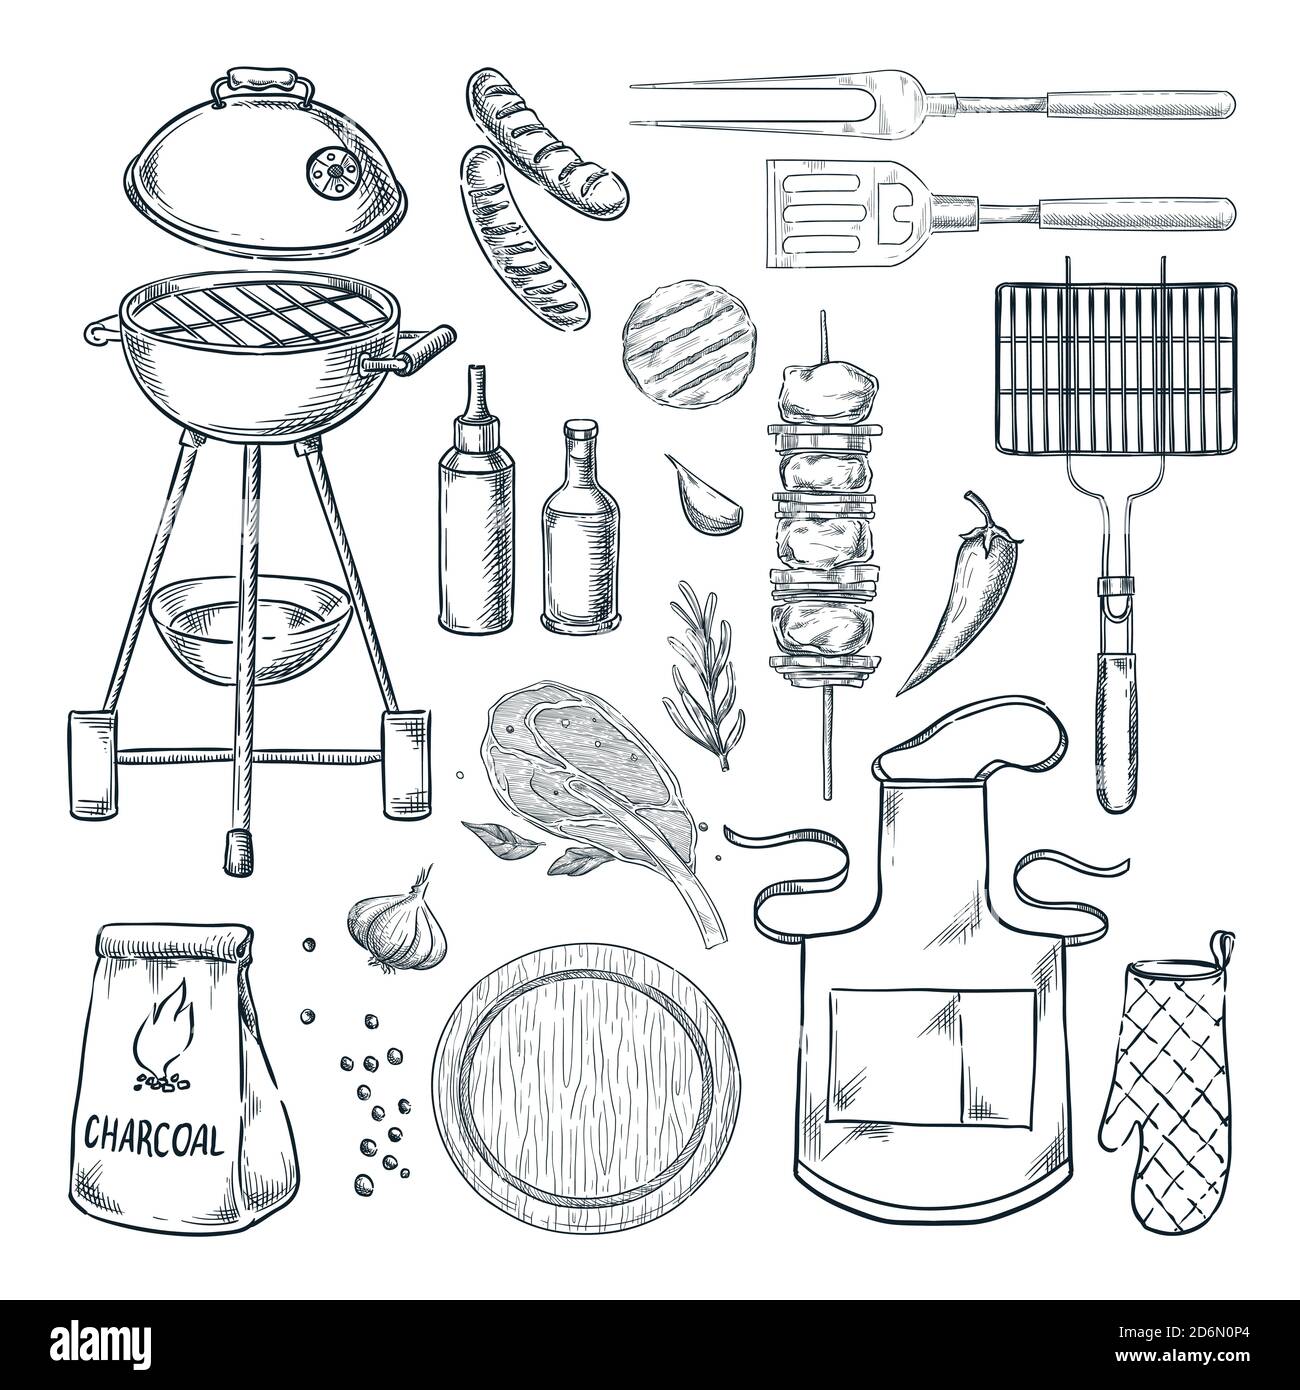 Illustrazione dello schizzo vettoriale del barbecue e della griglia. Barbecue, isolato su sfondo bianco. Cibo, attrezzature e utensili per utensili. Elementi di progettazione del menu picnic. Illustrazione Vettoriale